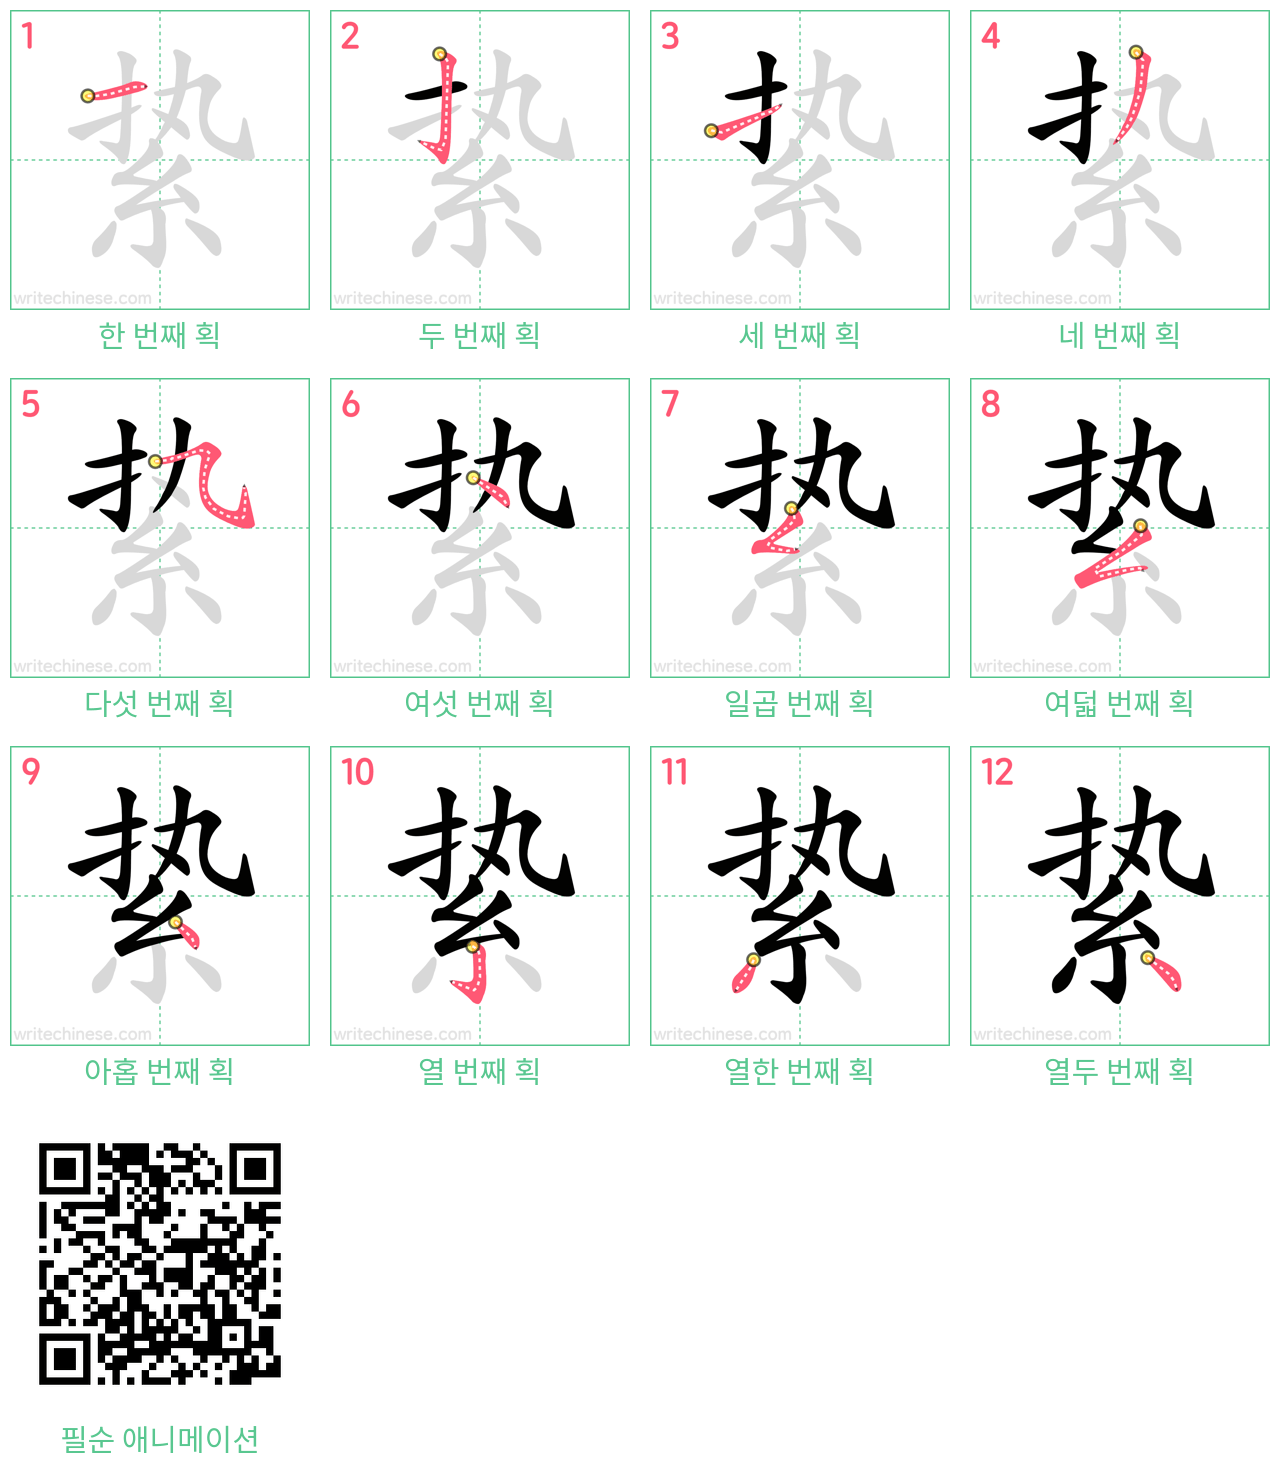 絷 step-by-step stroke order diagrams